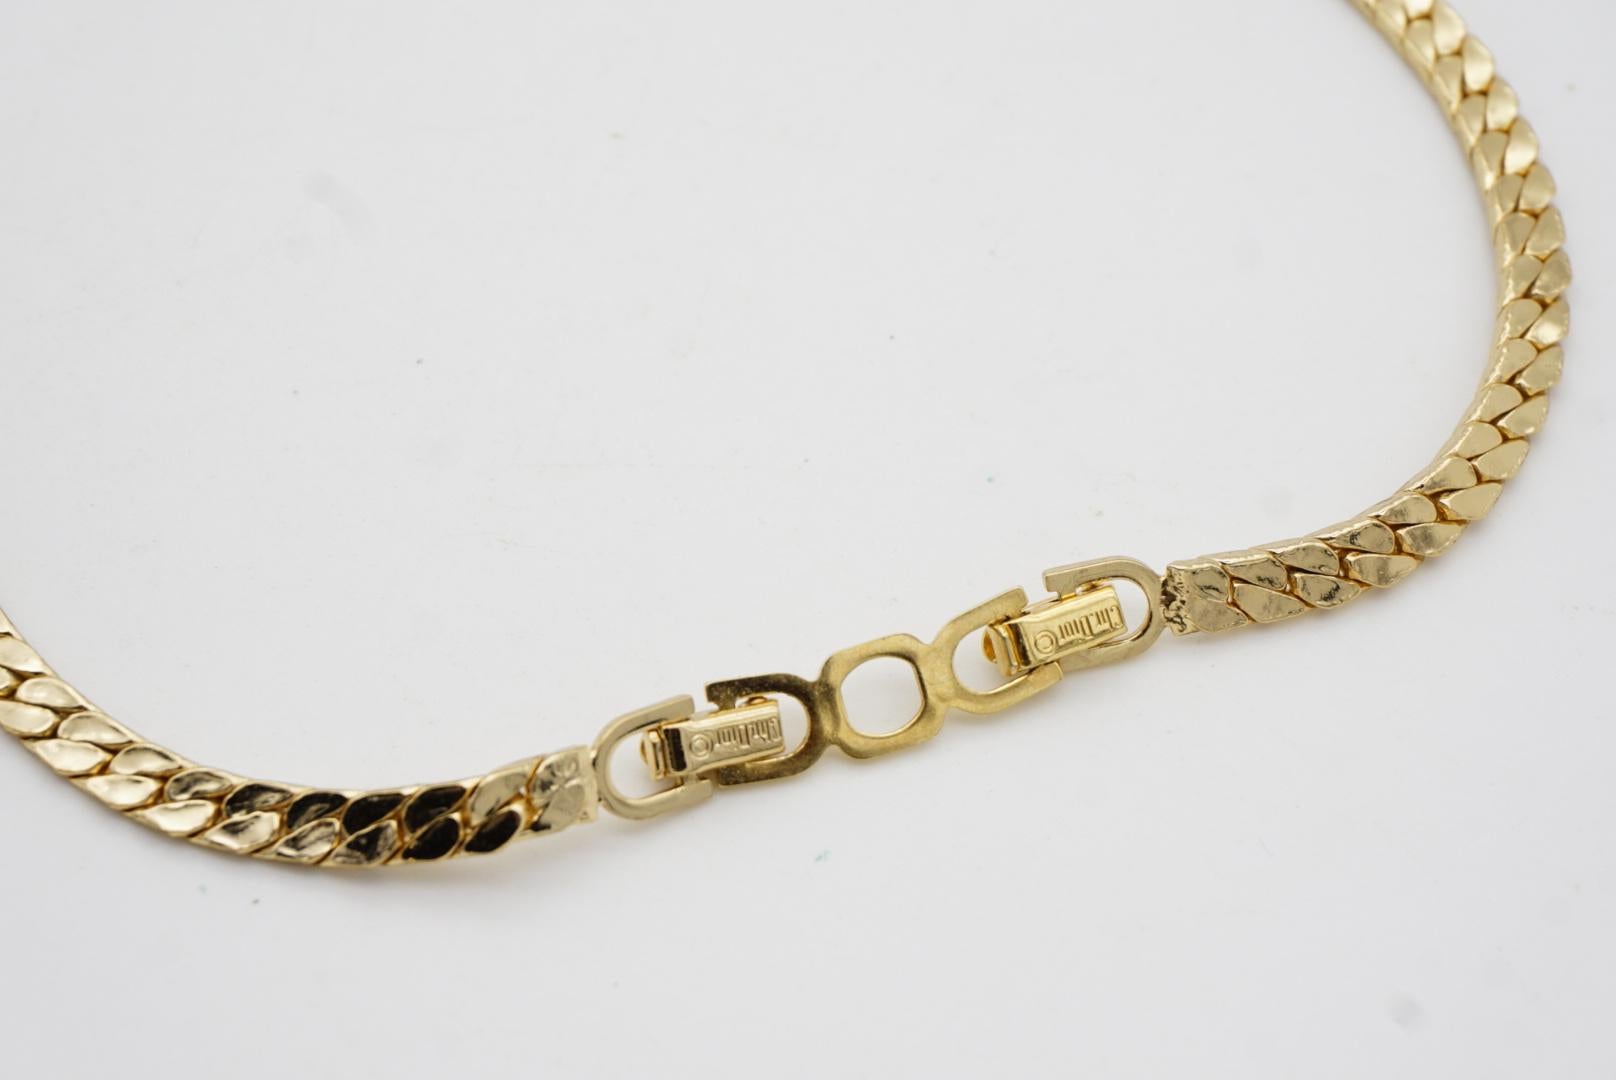 Christian Dior Vintage 1980s Long Bar Black Enamel Crystal Gold Pendant Necklace For Sale 8